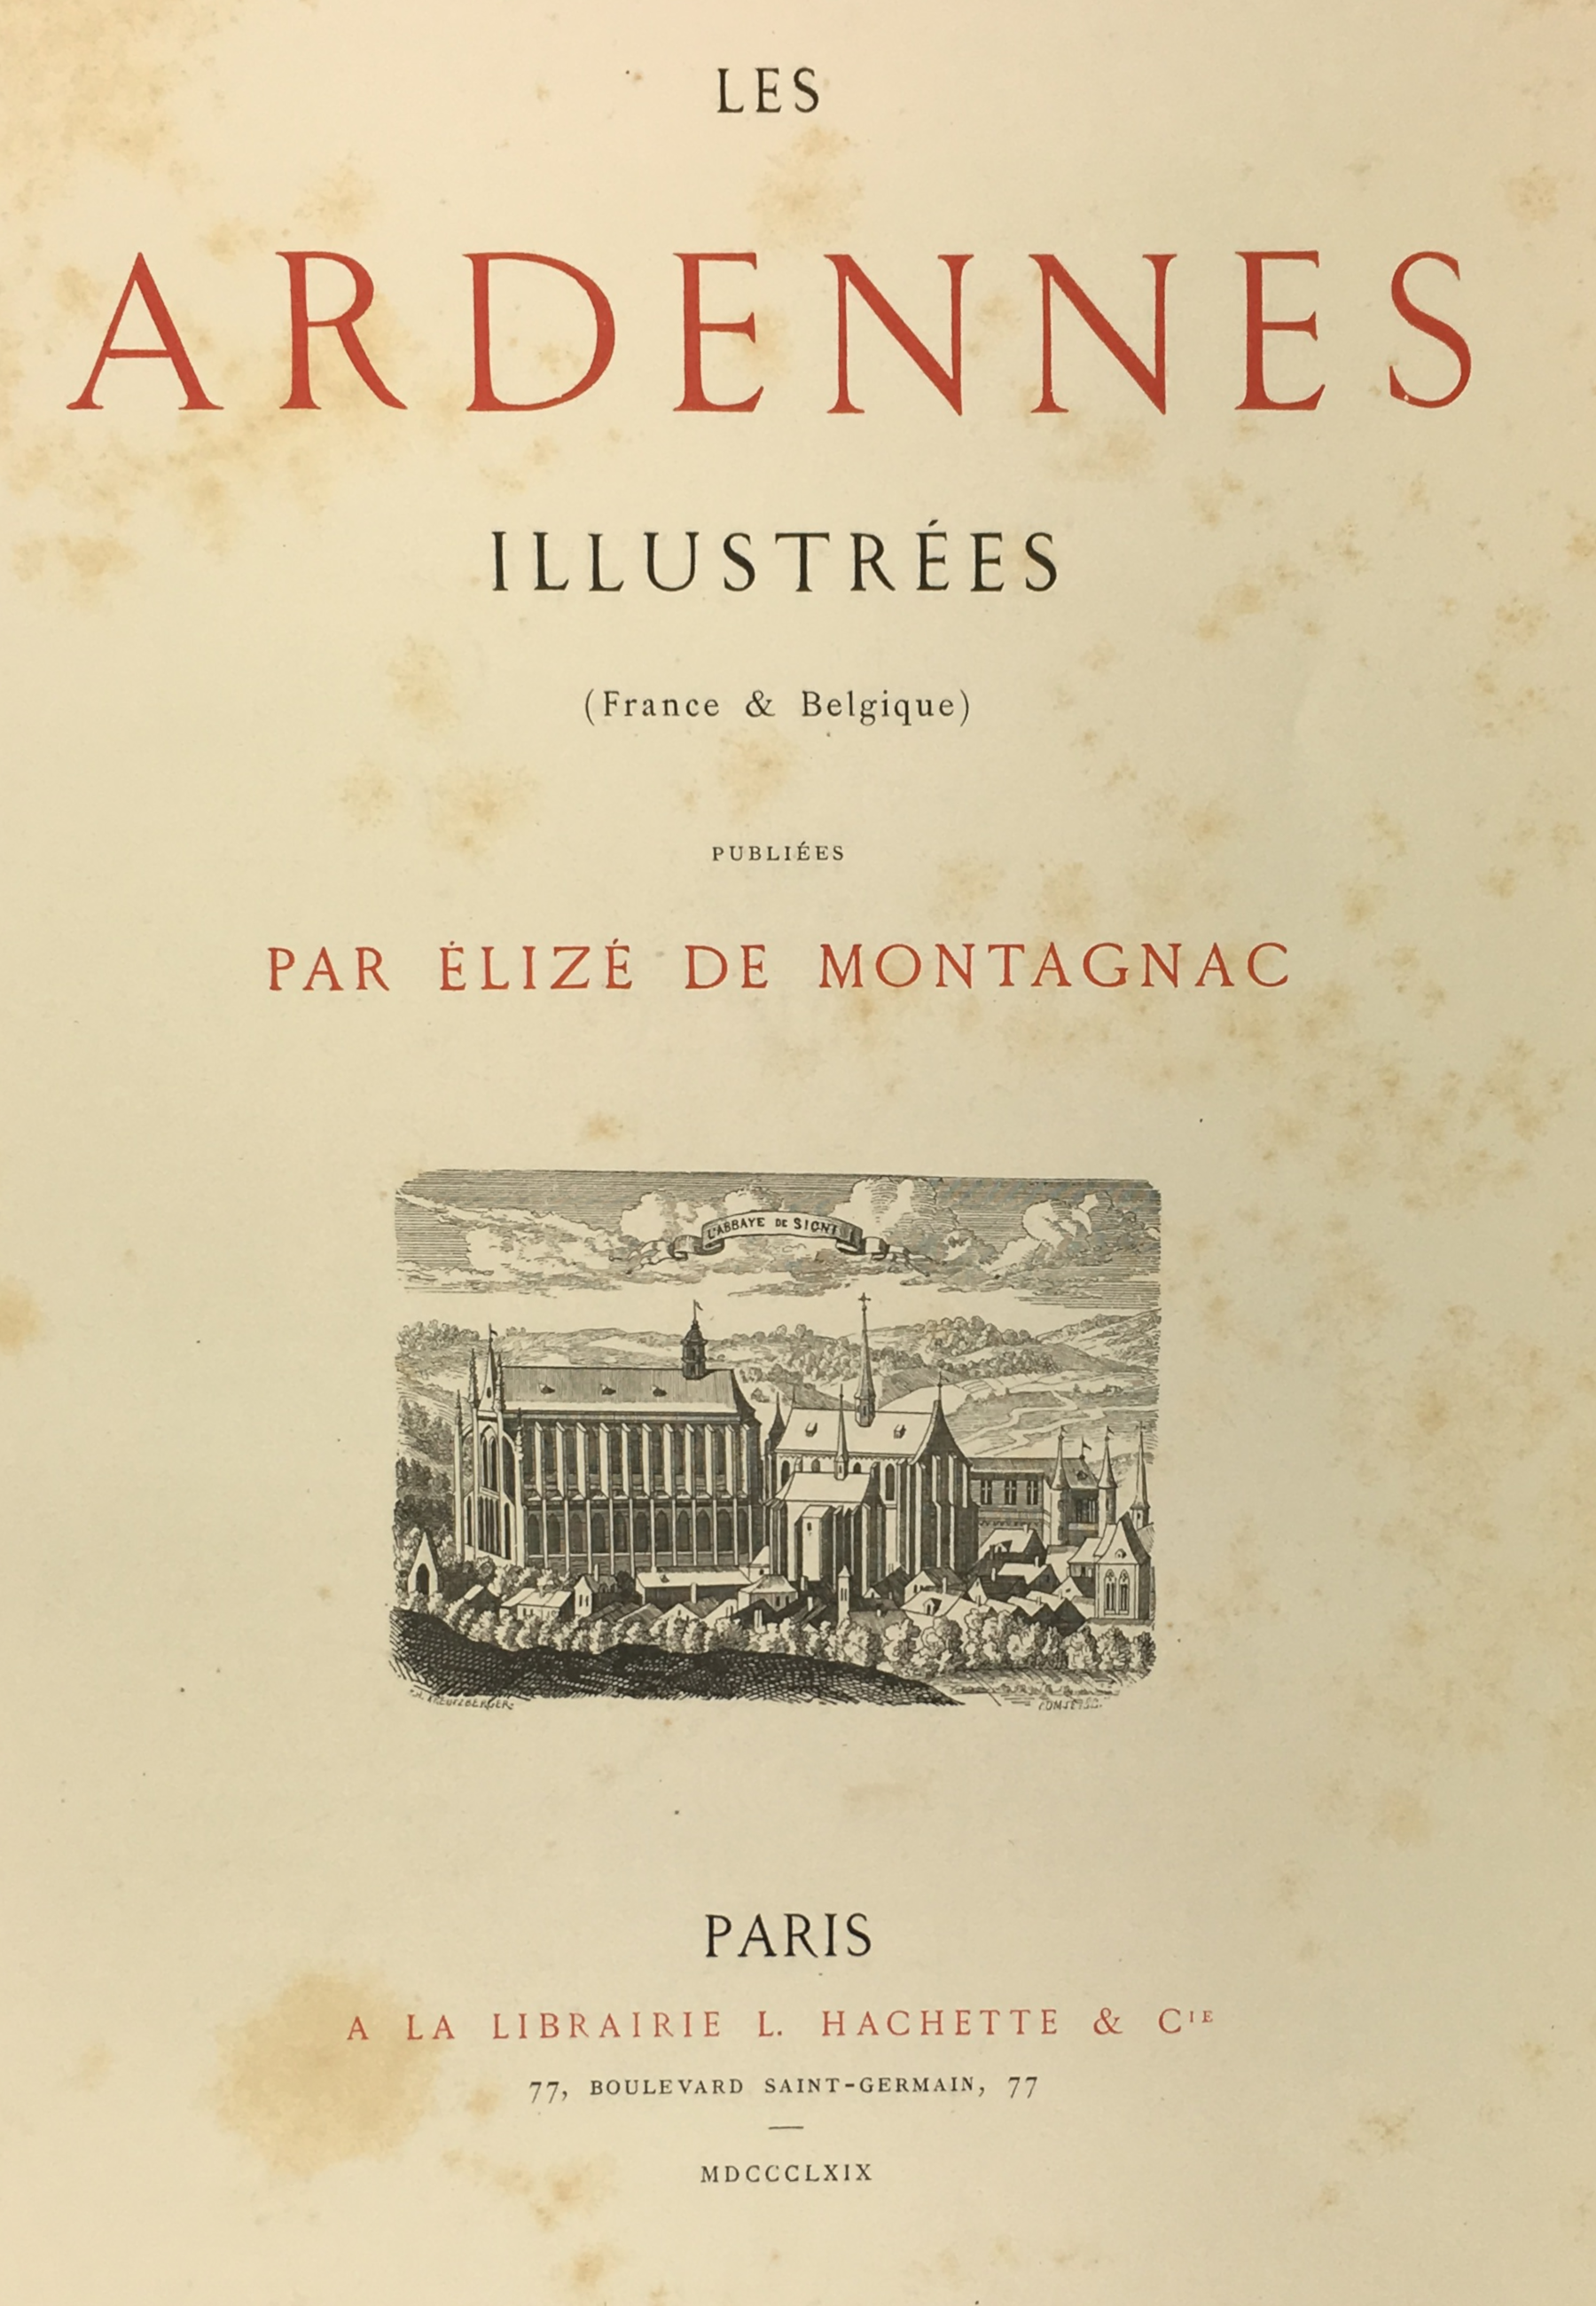 © Les Ardennes illustrées par Elizé de Montagnac, 1869 coll. MGD